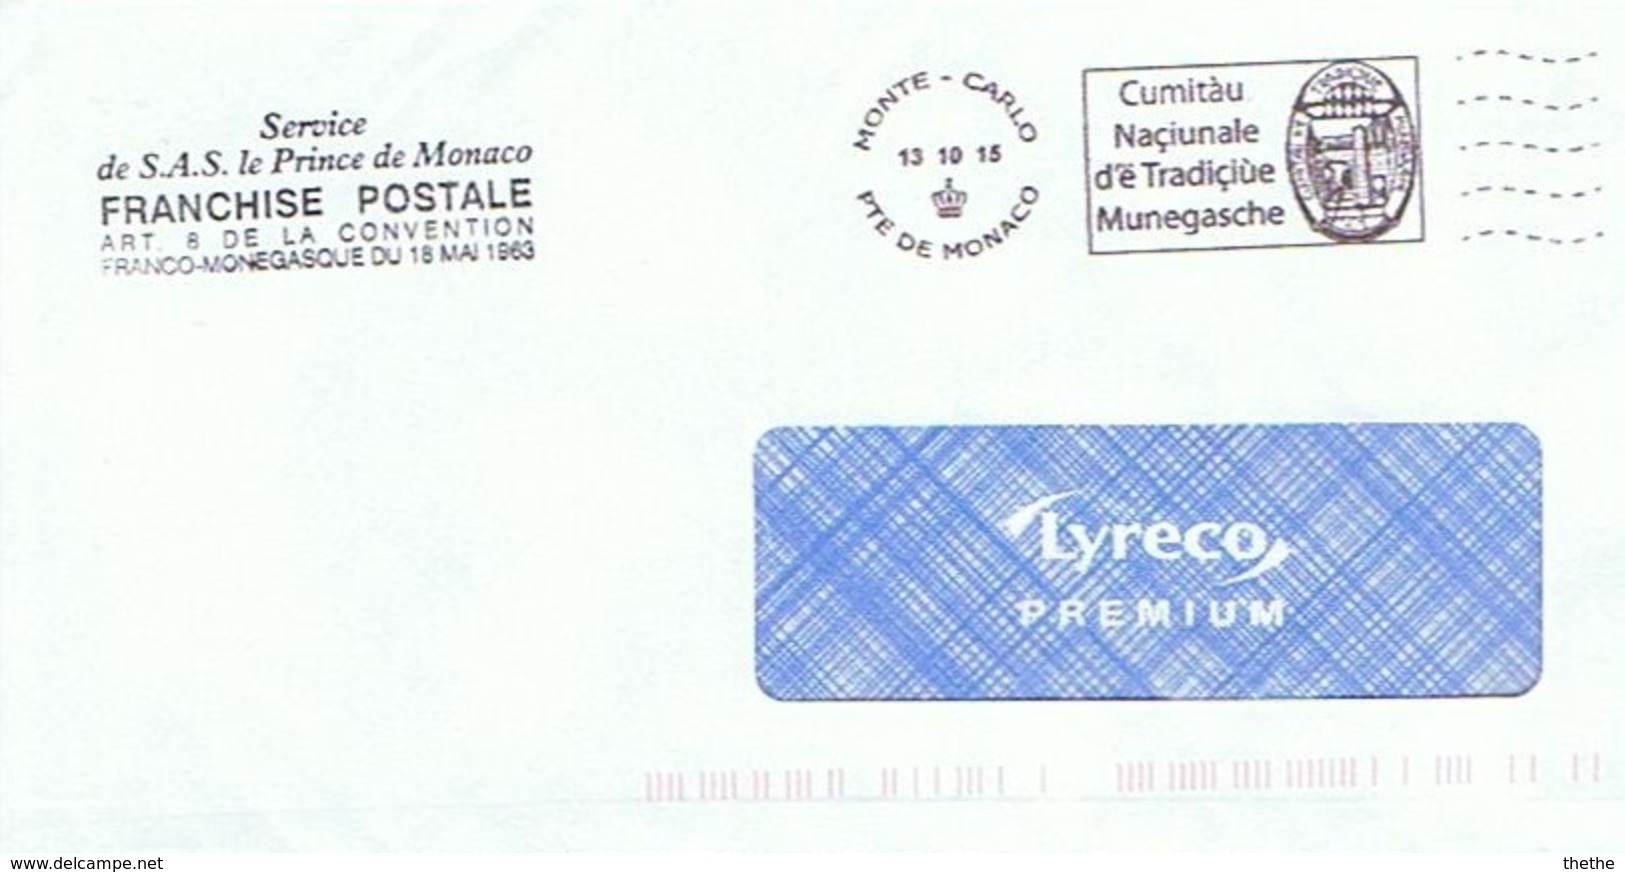 Service De S.A.S. Le Prince De Monaco - Franchise Postale - Maschinenstempel (EMA)